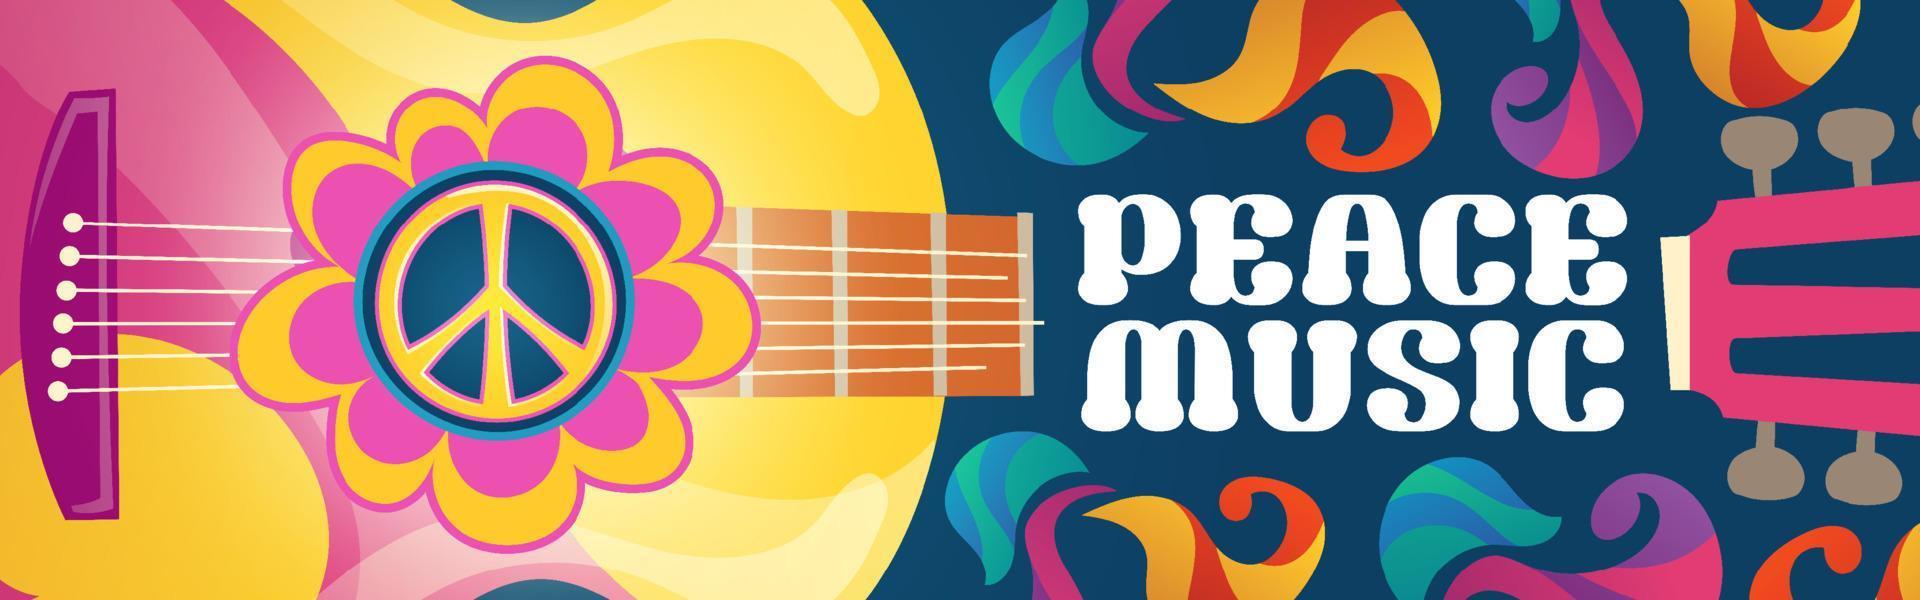 banner de desenho animado de música hippie com violão vetor